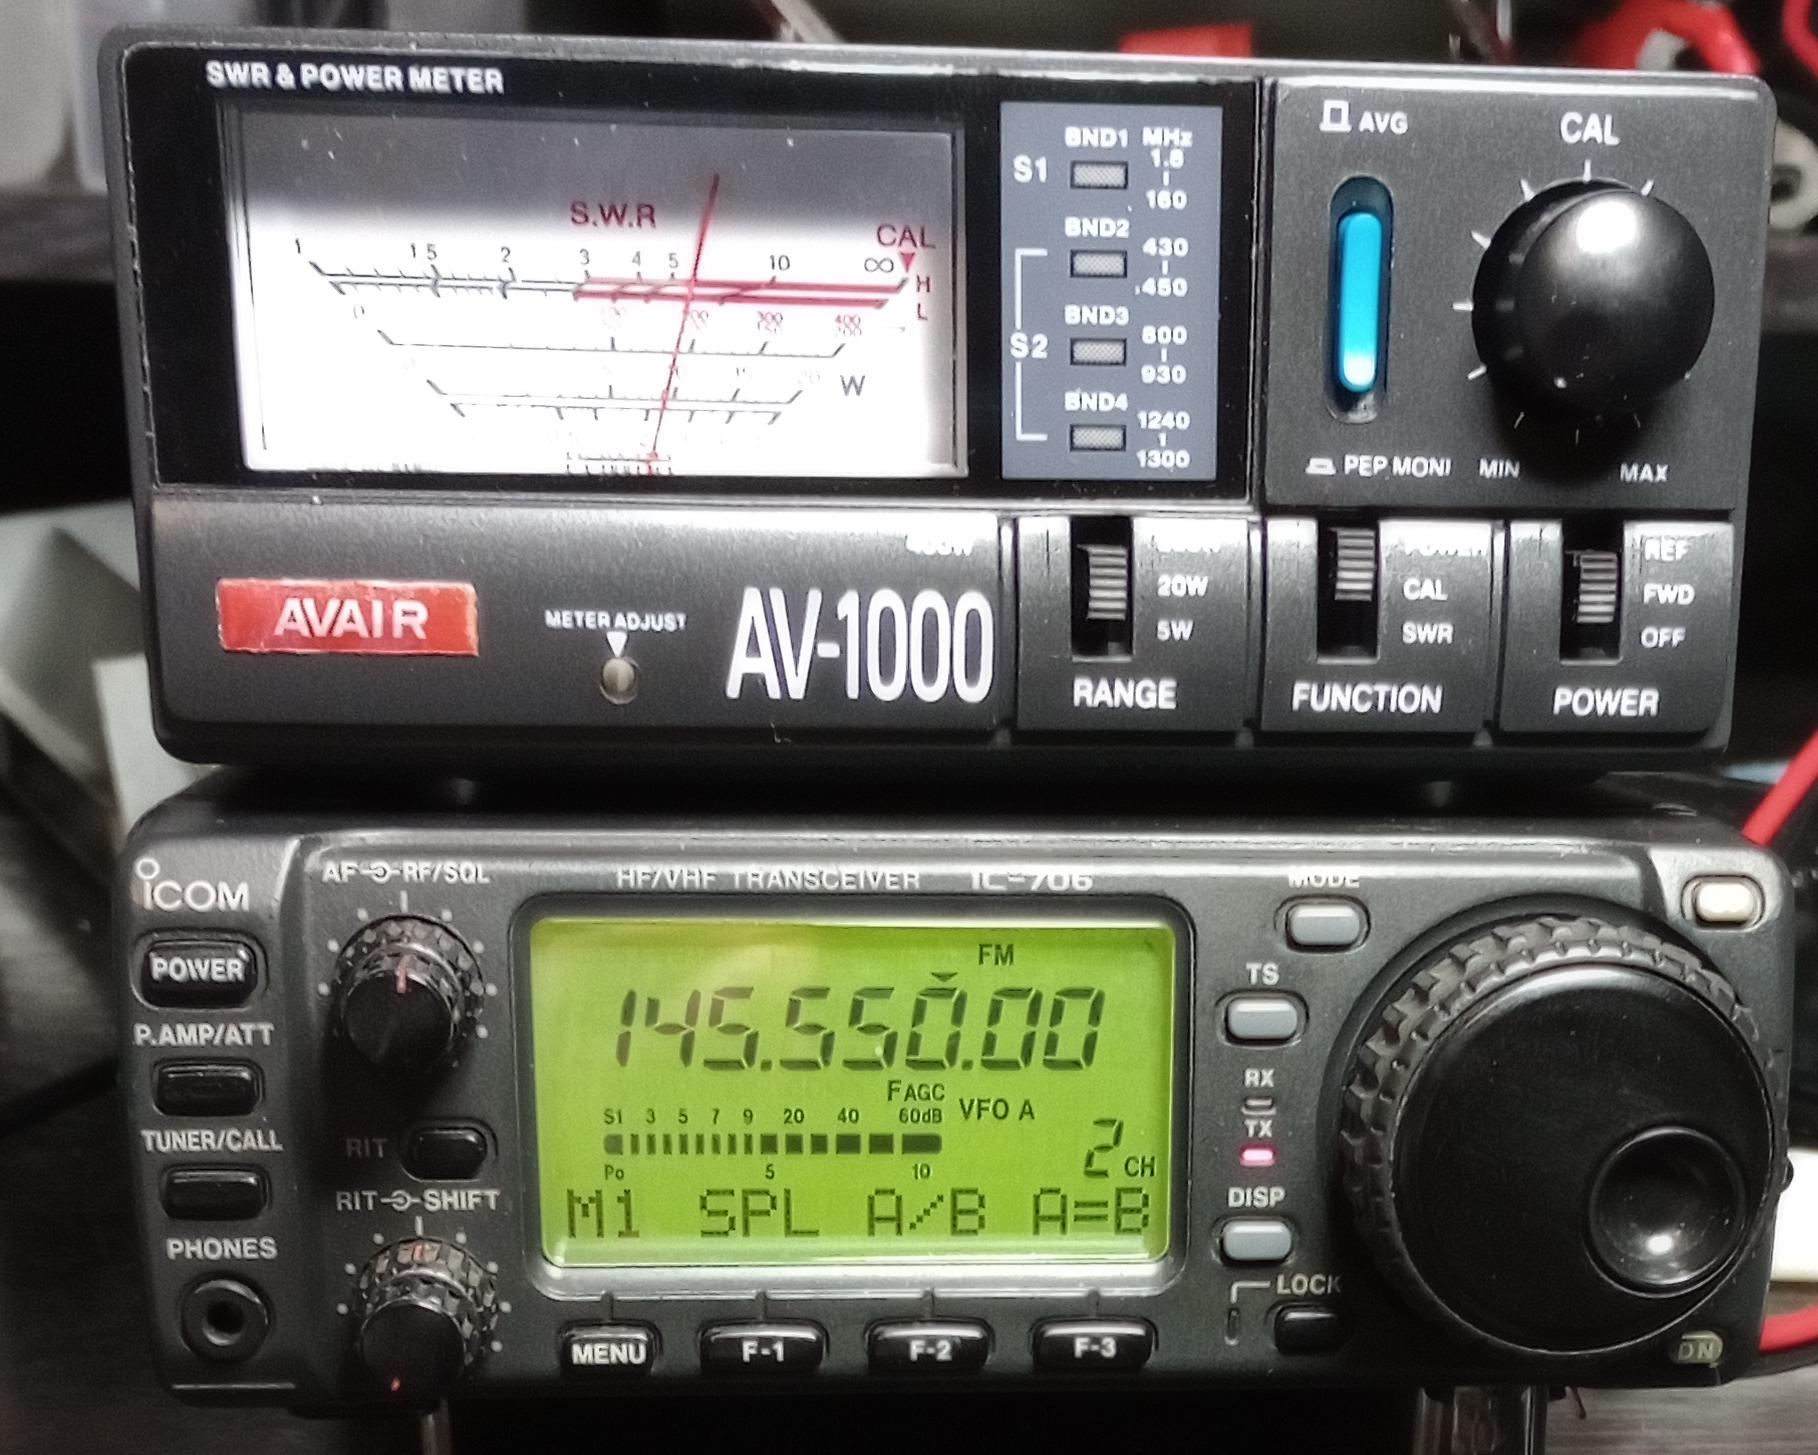 Transmitting on VHF